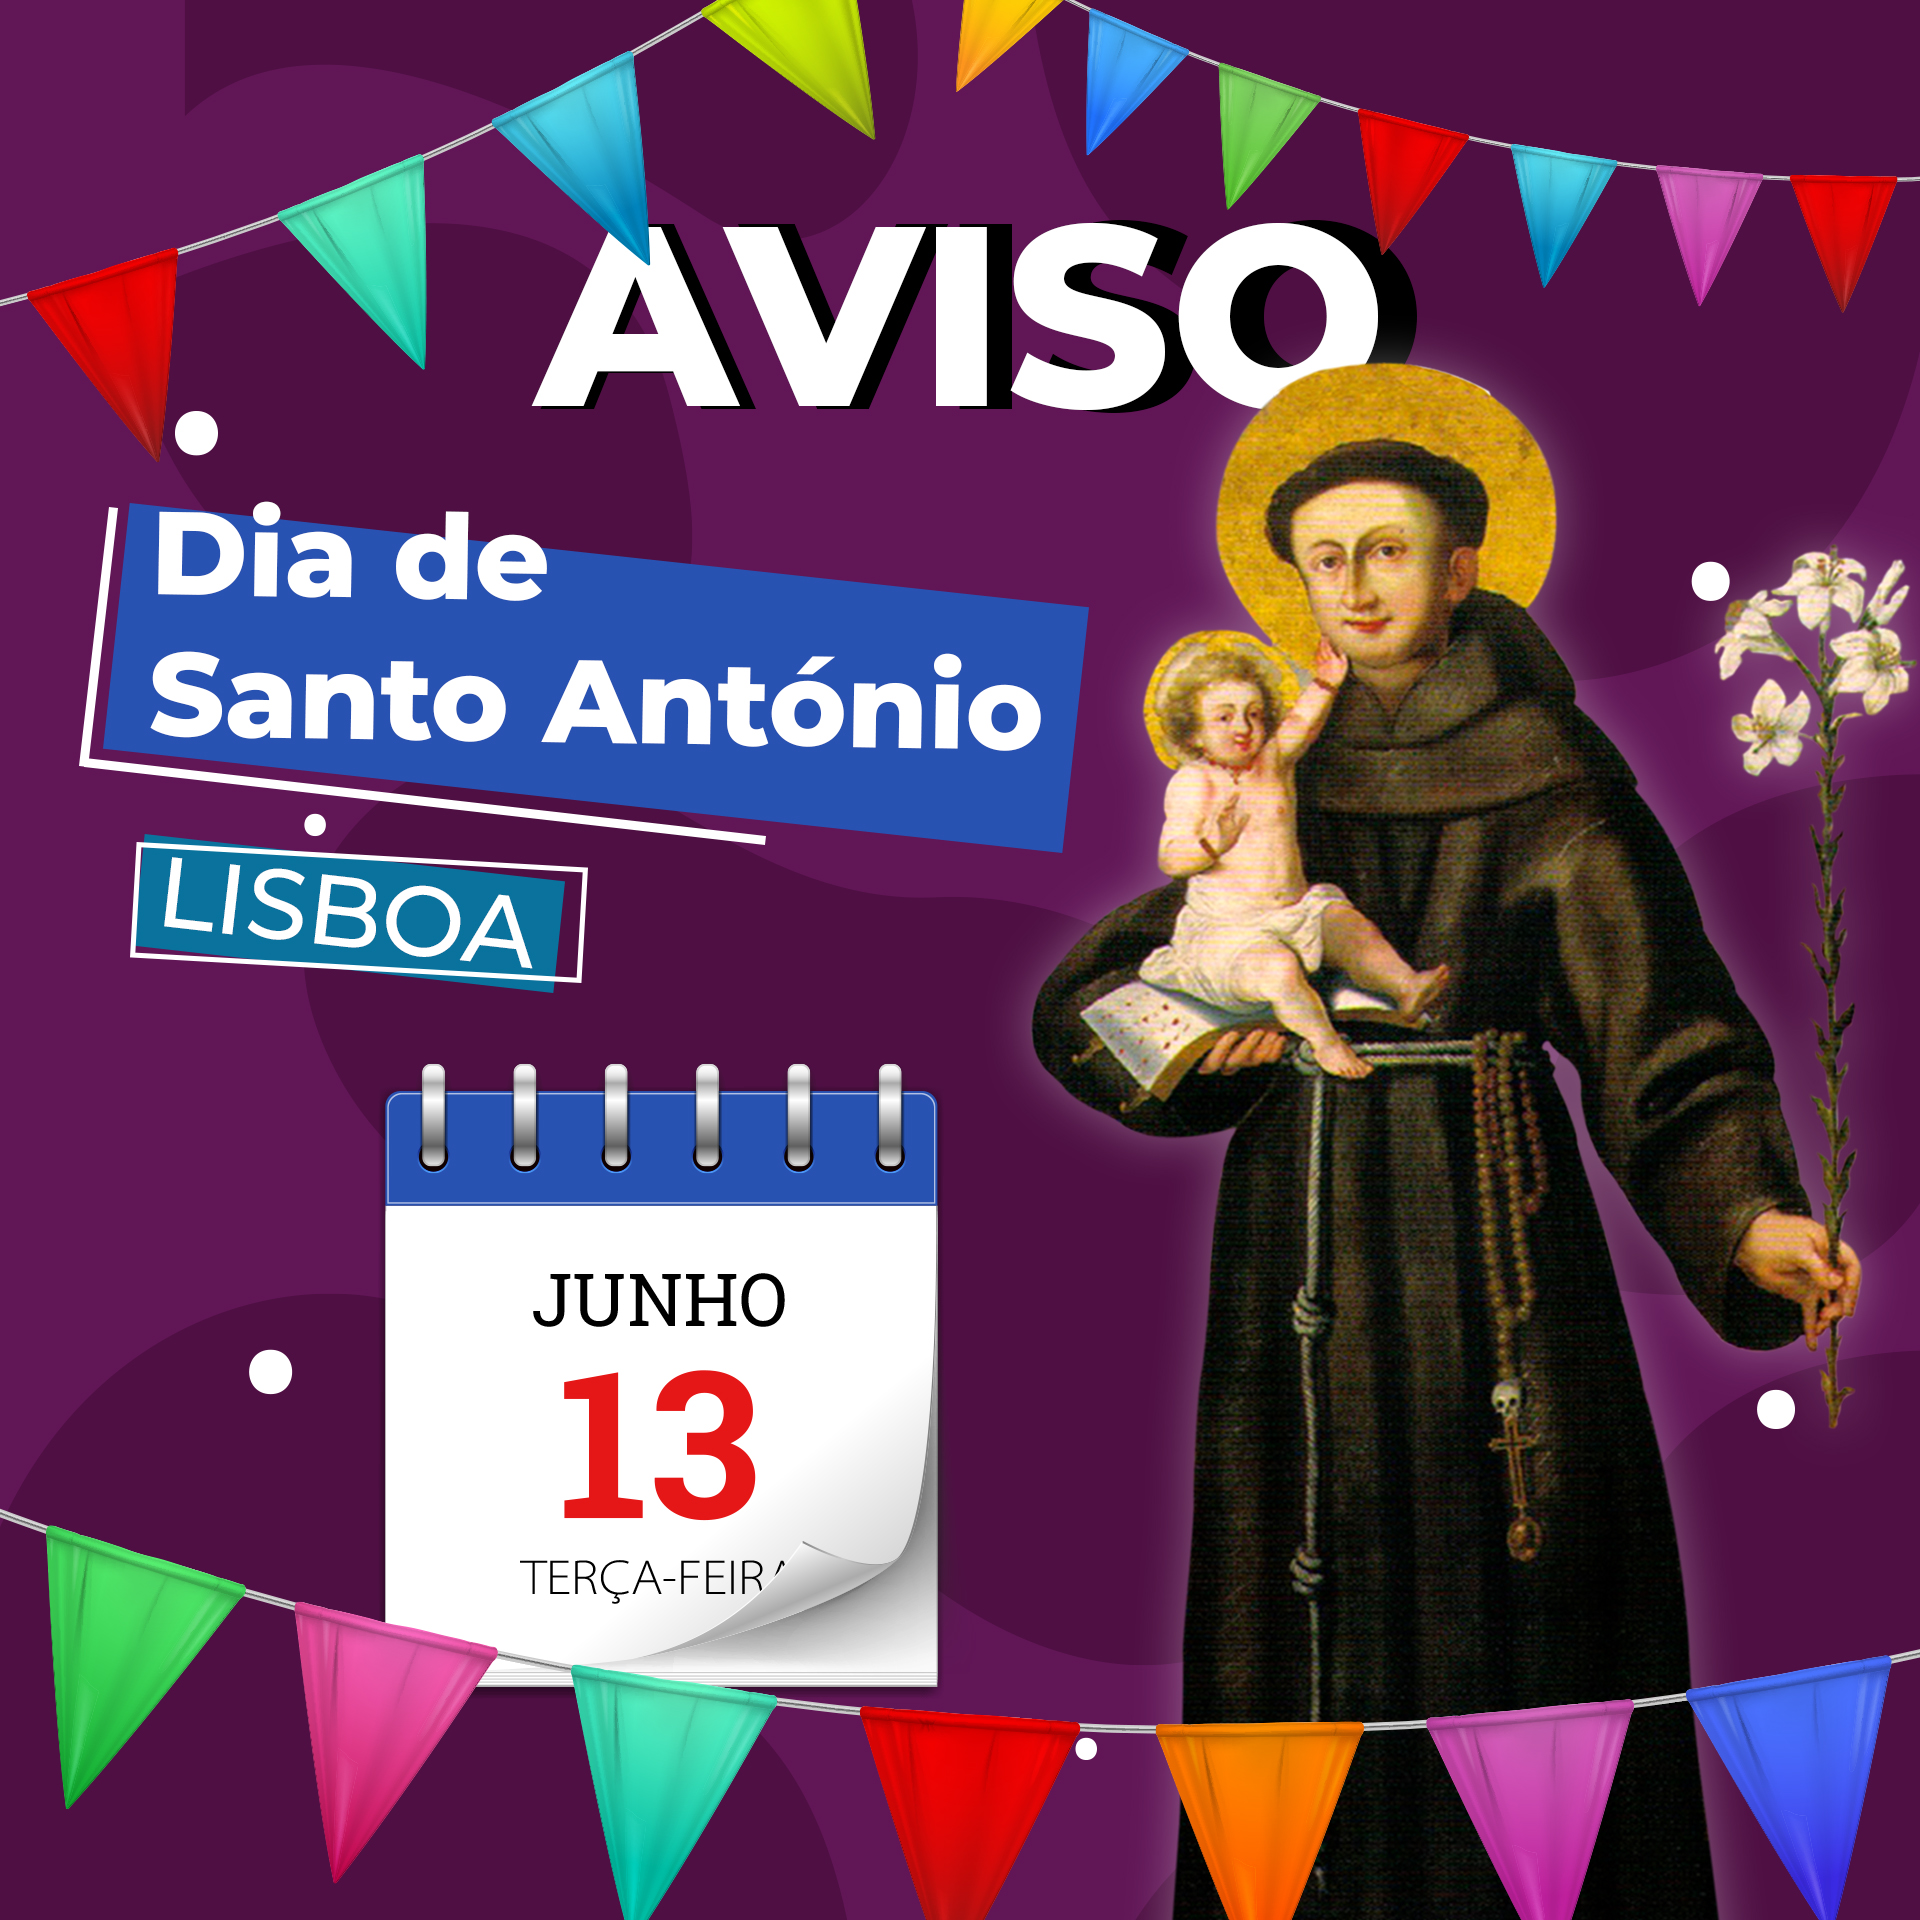 AVISO - Base Operacional Sul encerrada para Festejos de Santo António